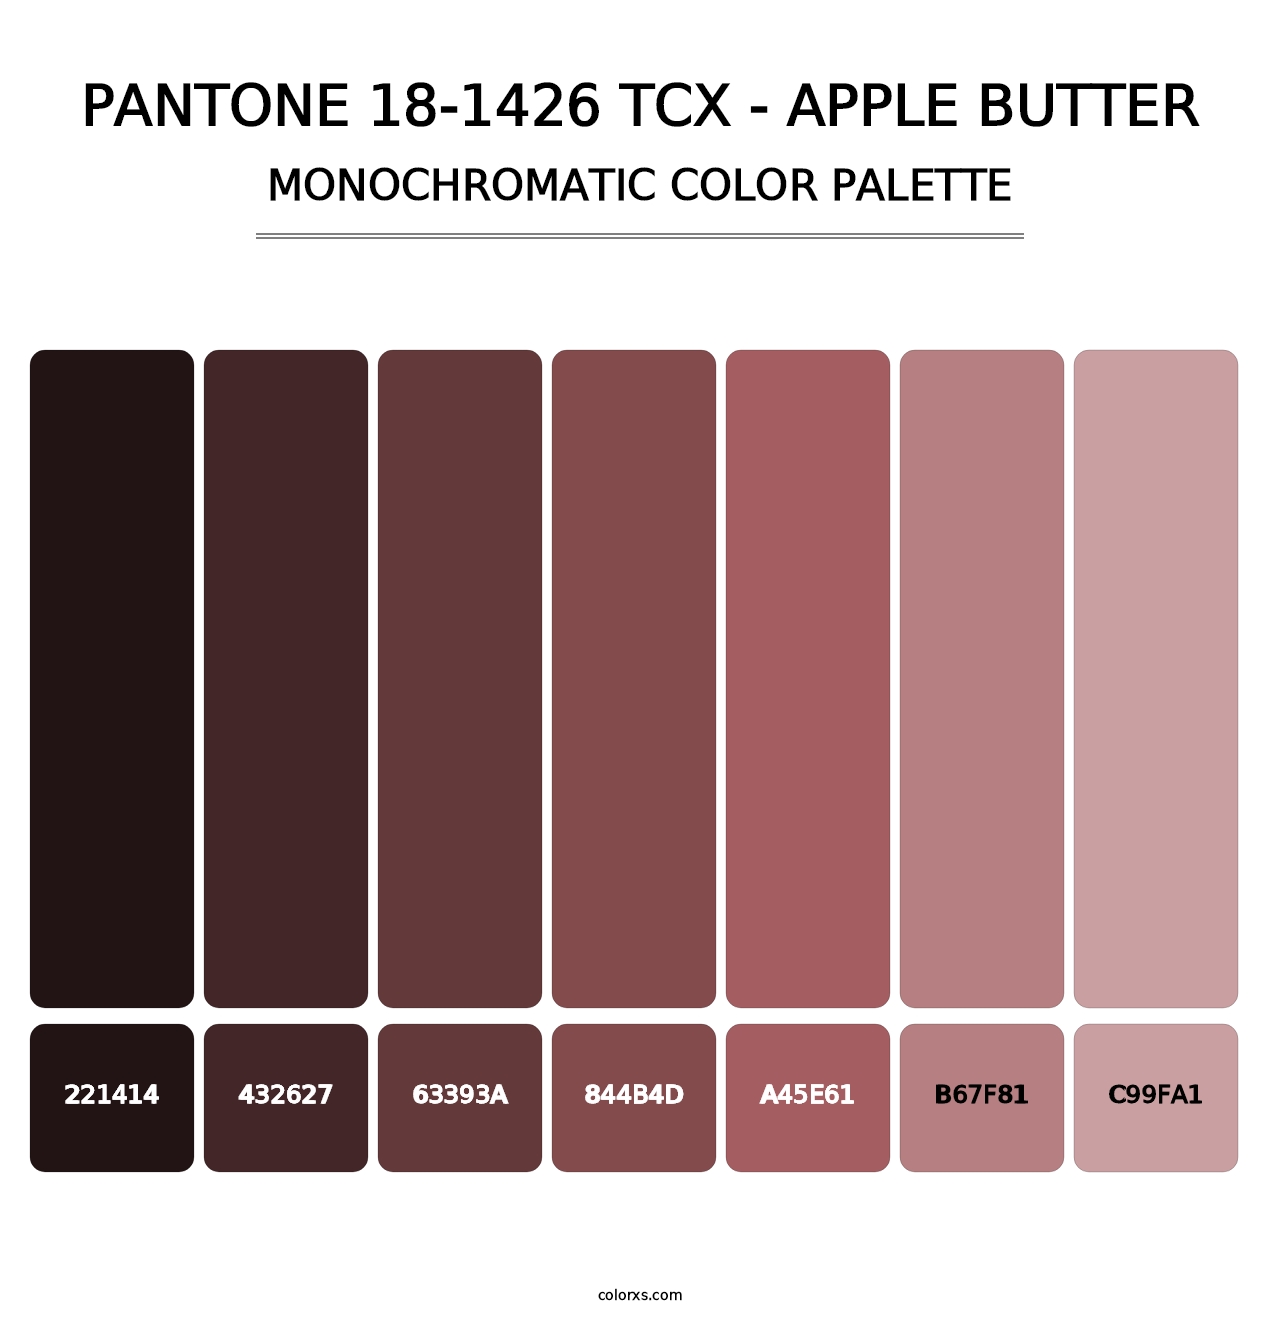 PANTONE 18-1426 TCX - Apple Butter - Monochromatic Color Palette